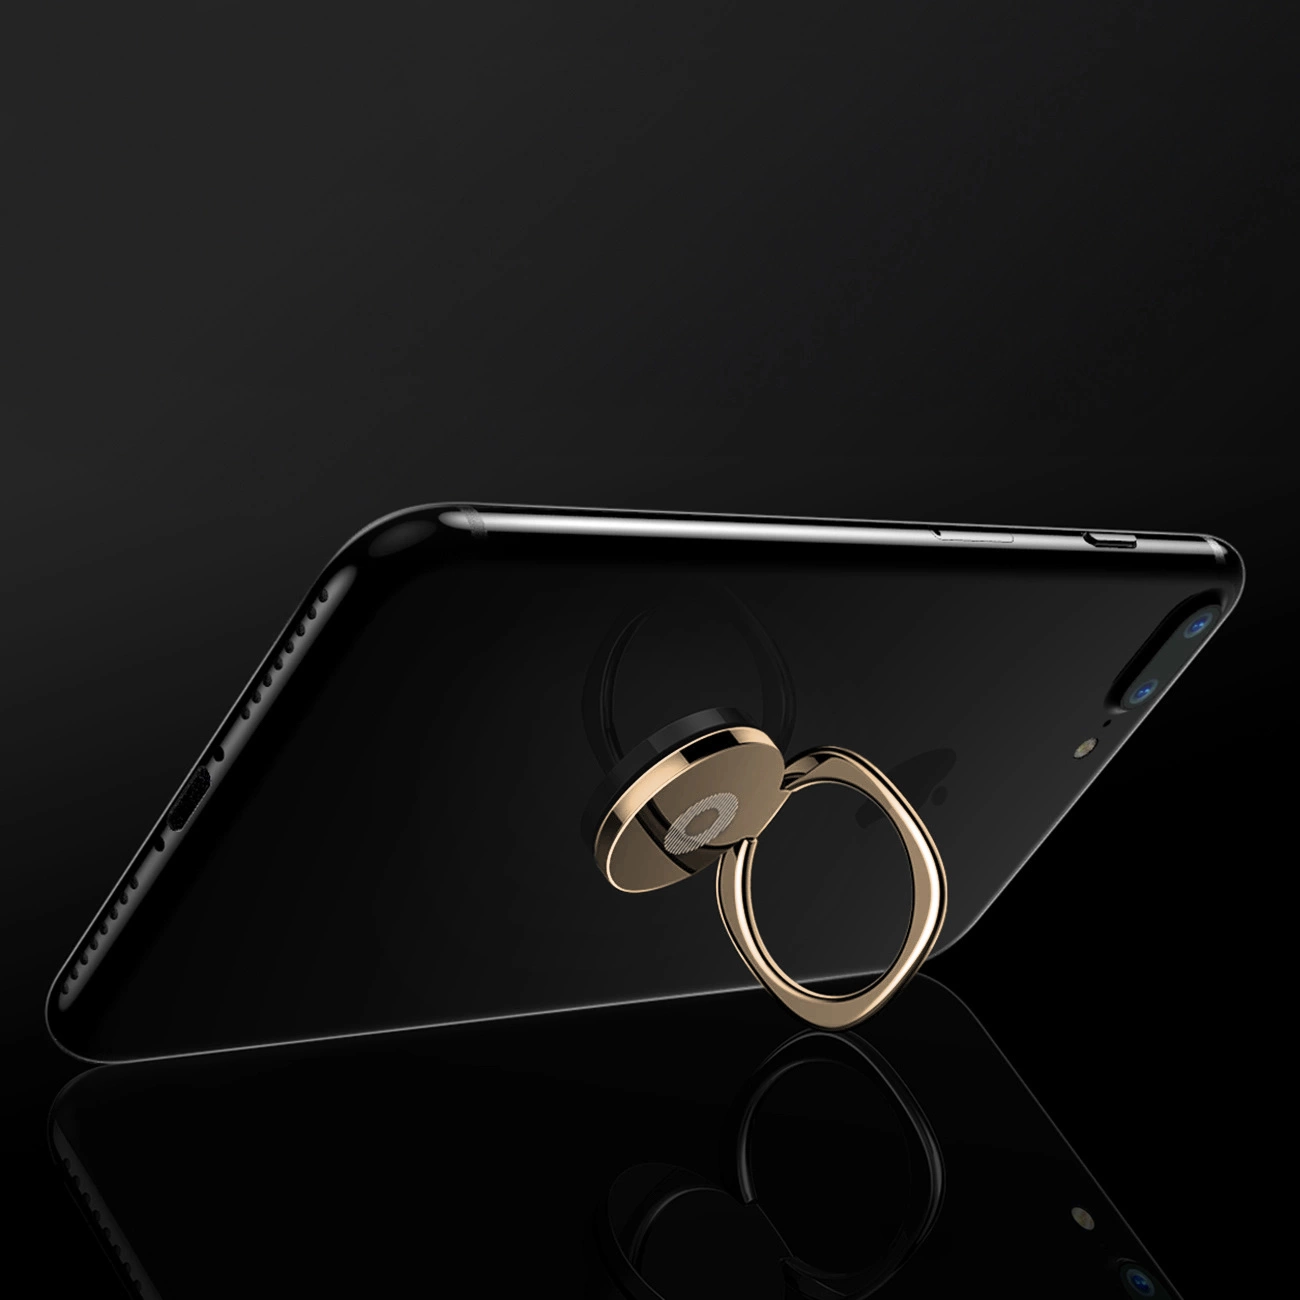 Rozłożony uchwyt Baseus Privity Ring z przymocowanym telefonem oparty o szklaną podłogę na czarnym tle